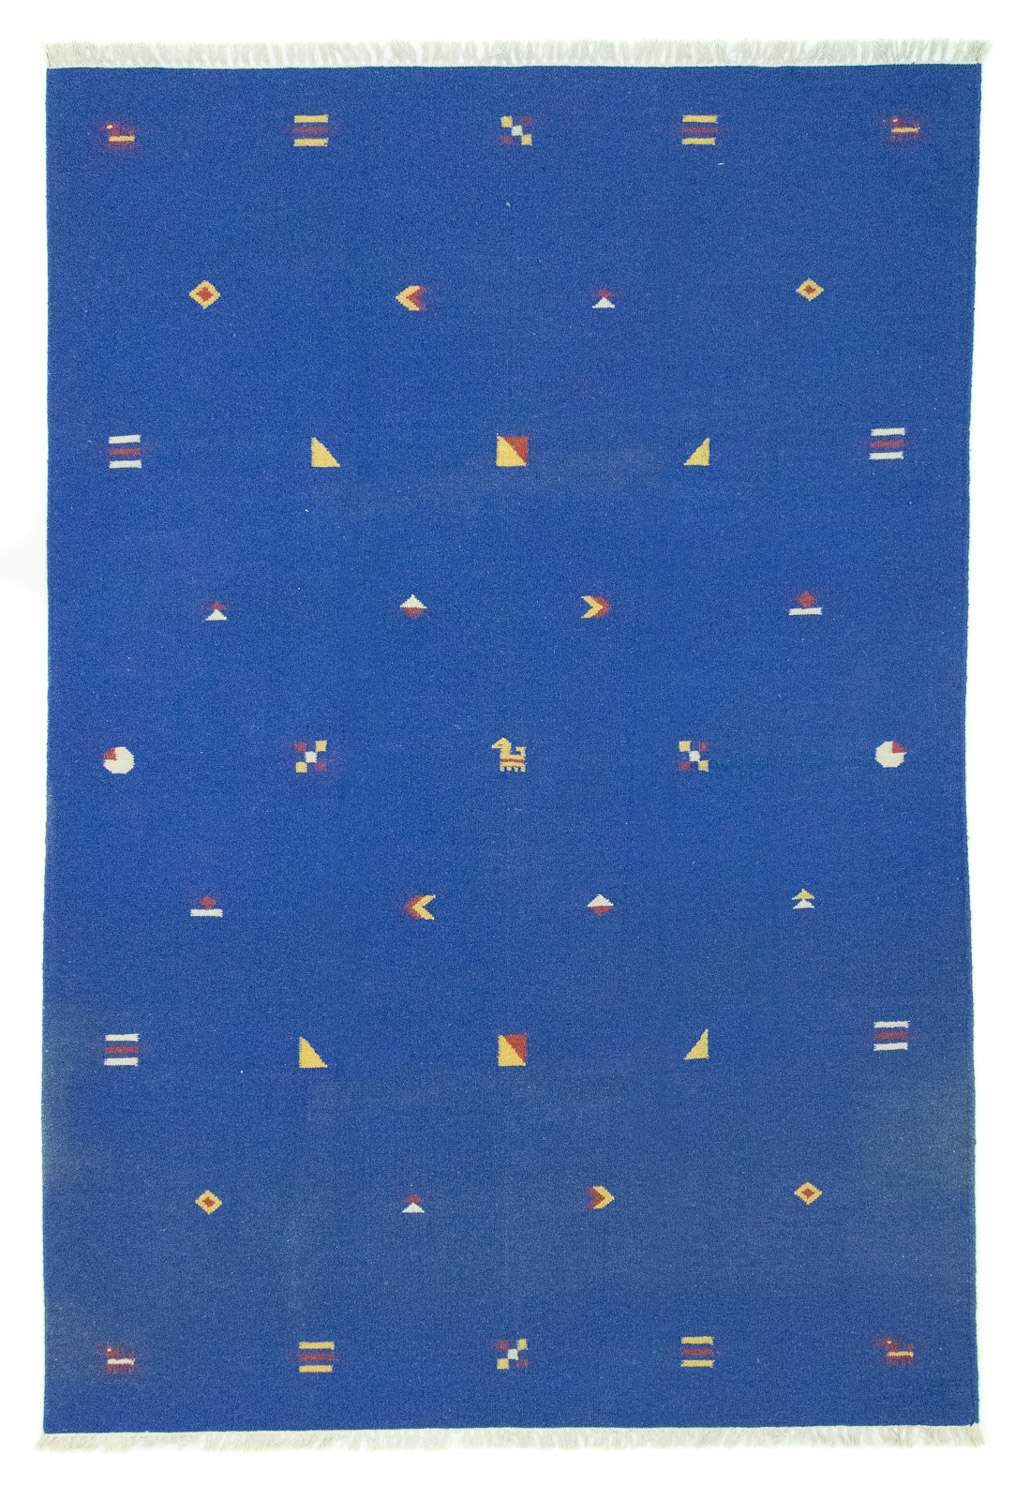 Tappeto Kelim - Tendenza - 300 x 200 cm - blu